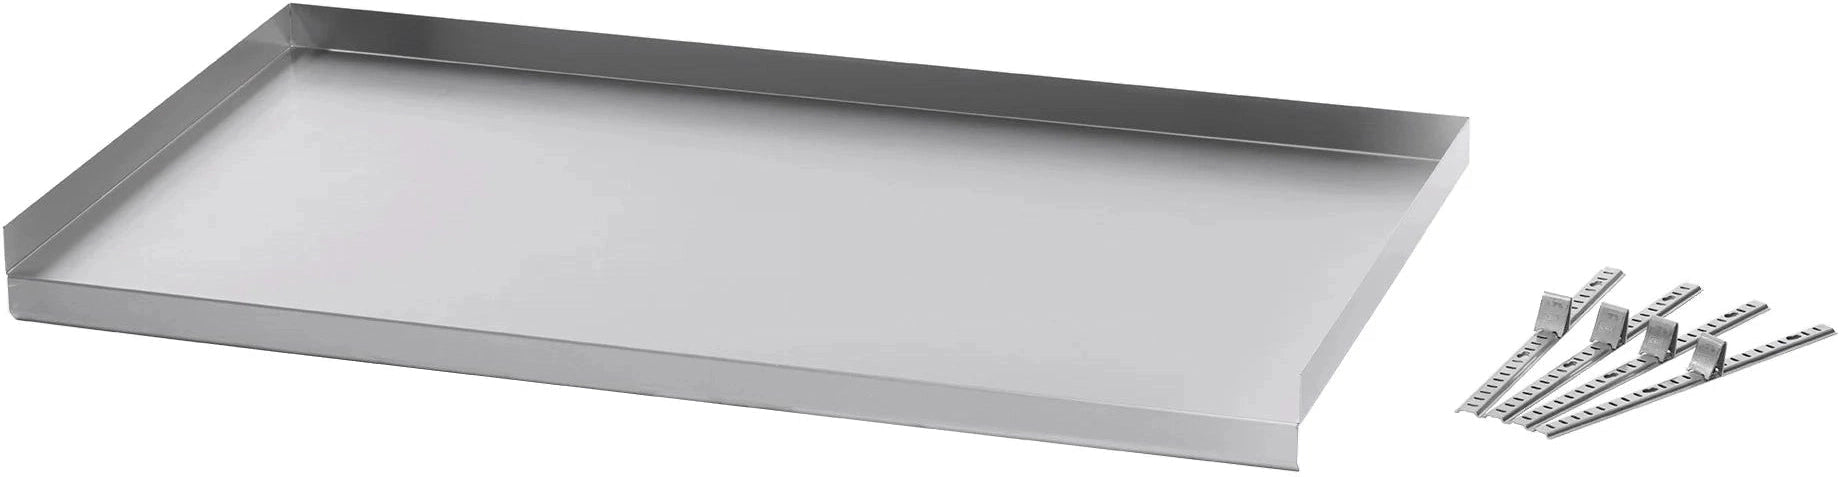 Julien - Rosko 72'' Adjustable Undershelf for Steam Table, Stainless Steel - RO-ACC-STFE-US72